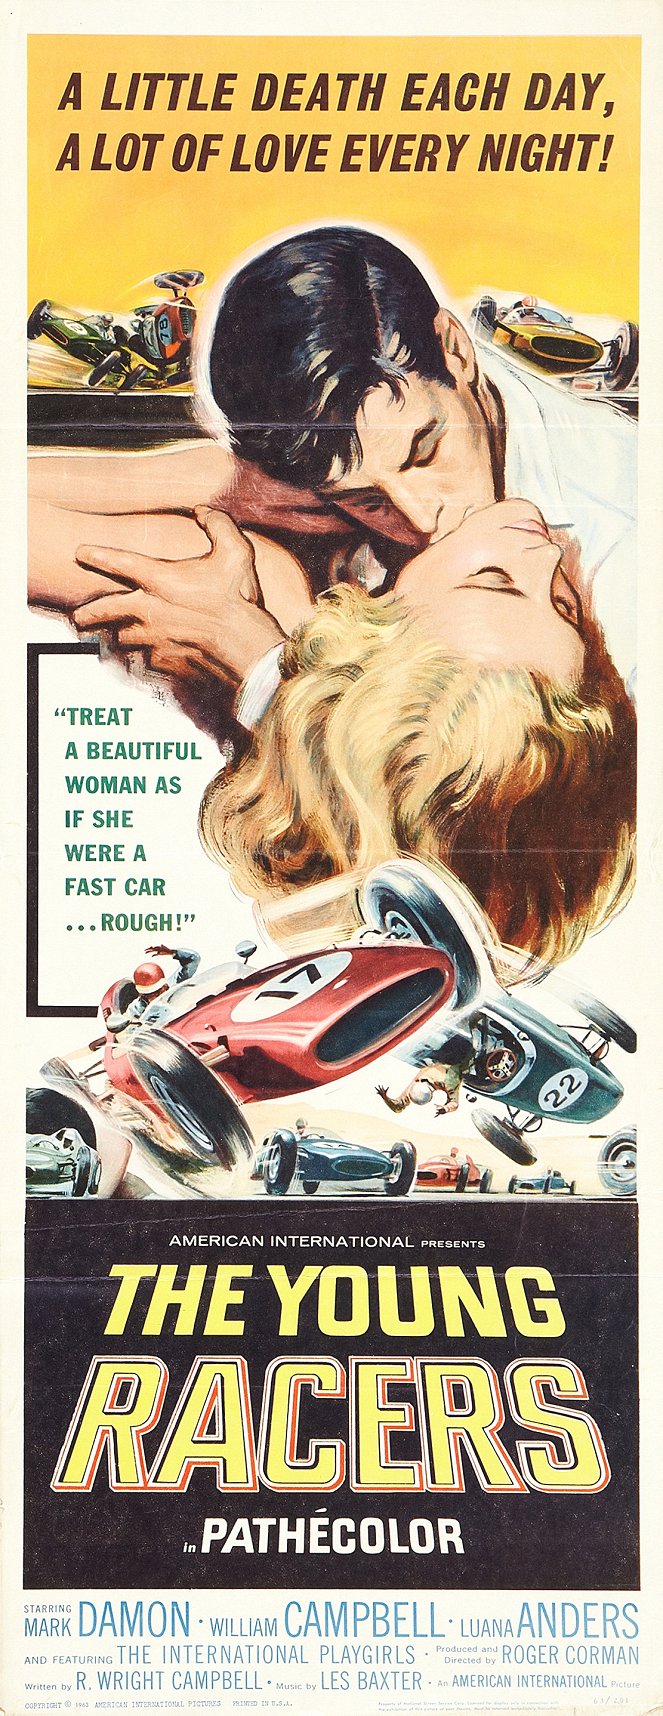 Schnelle Autos und Affären - Plakate